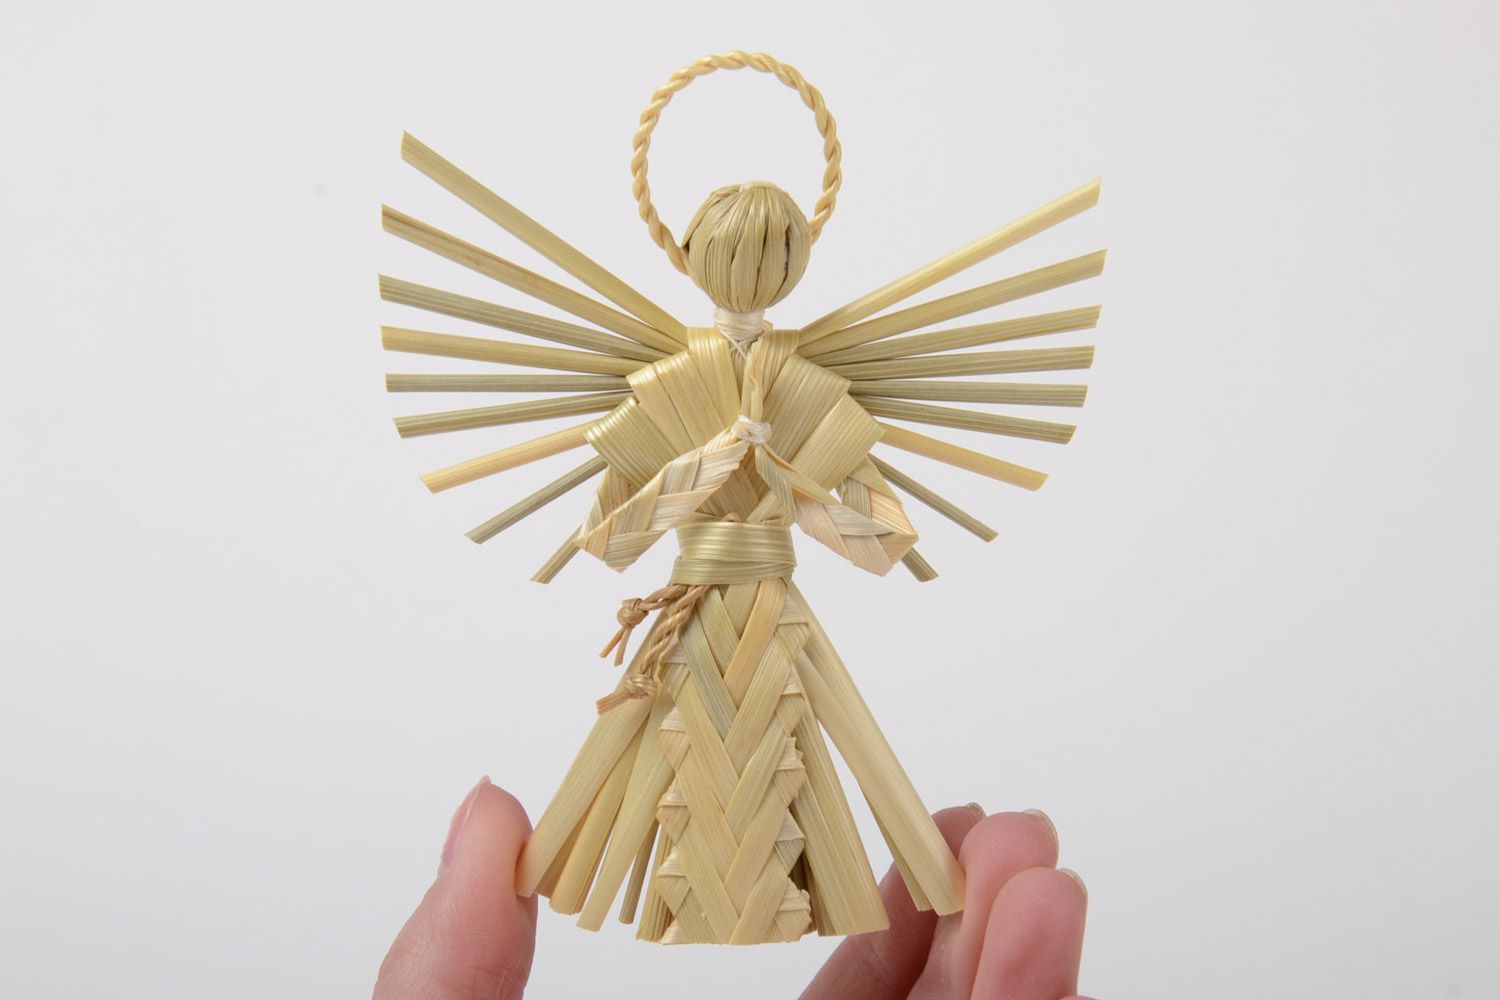 Ангел хранитель из соломы красивый небольшой фигурка для декора ручной работы фото 5